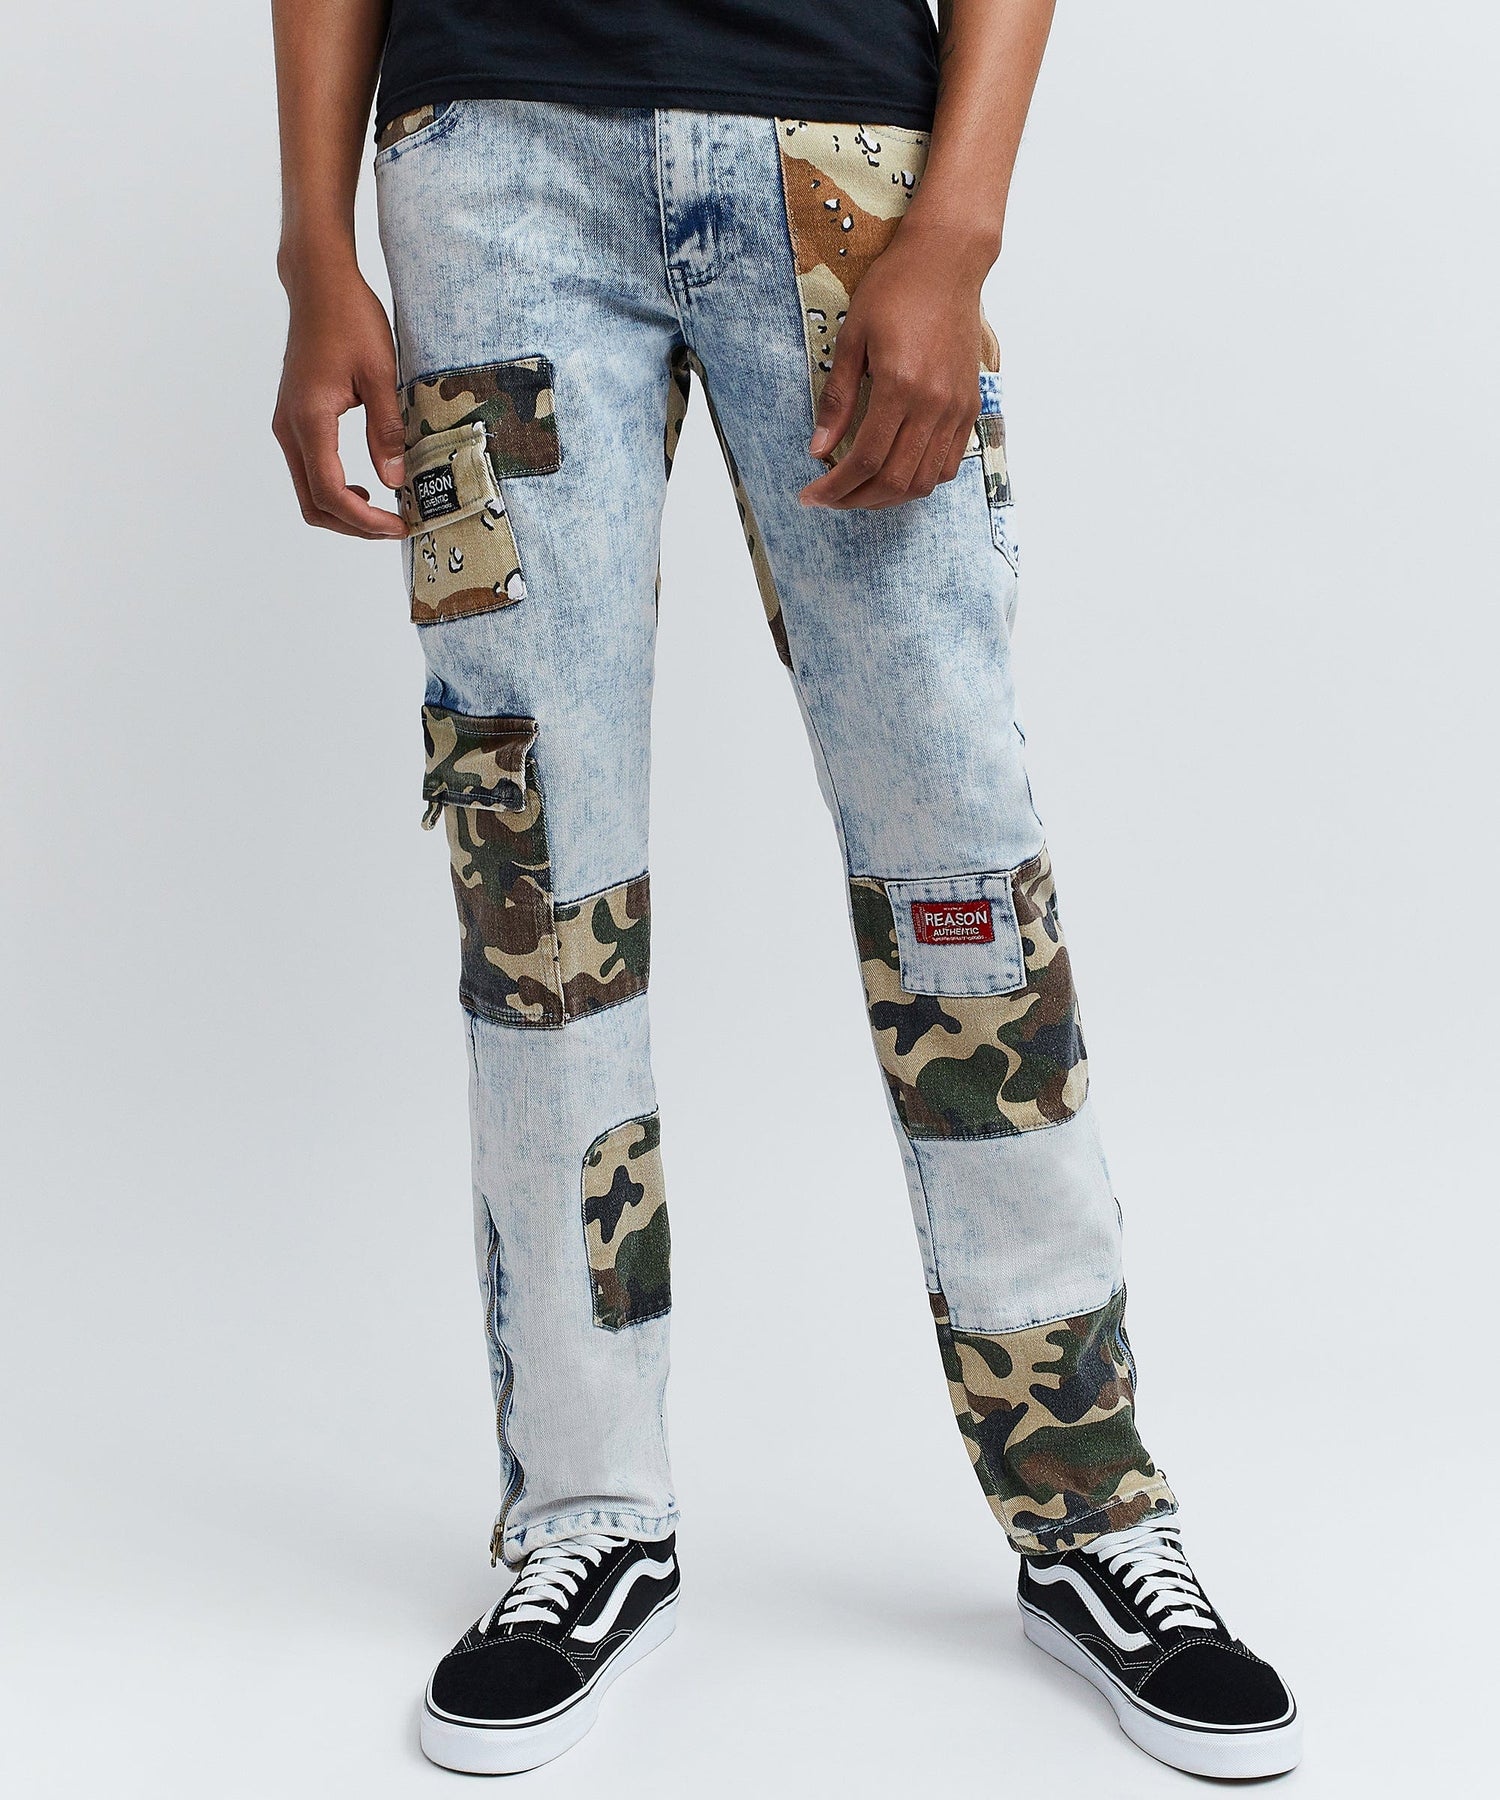 Reason Men's Camo Patchwork Jeans